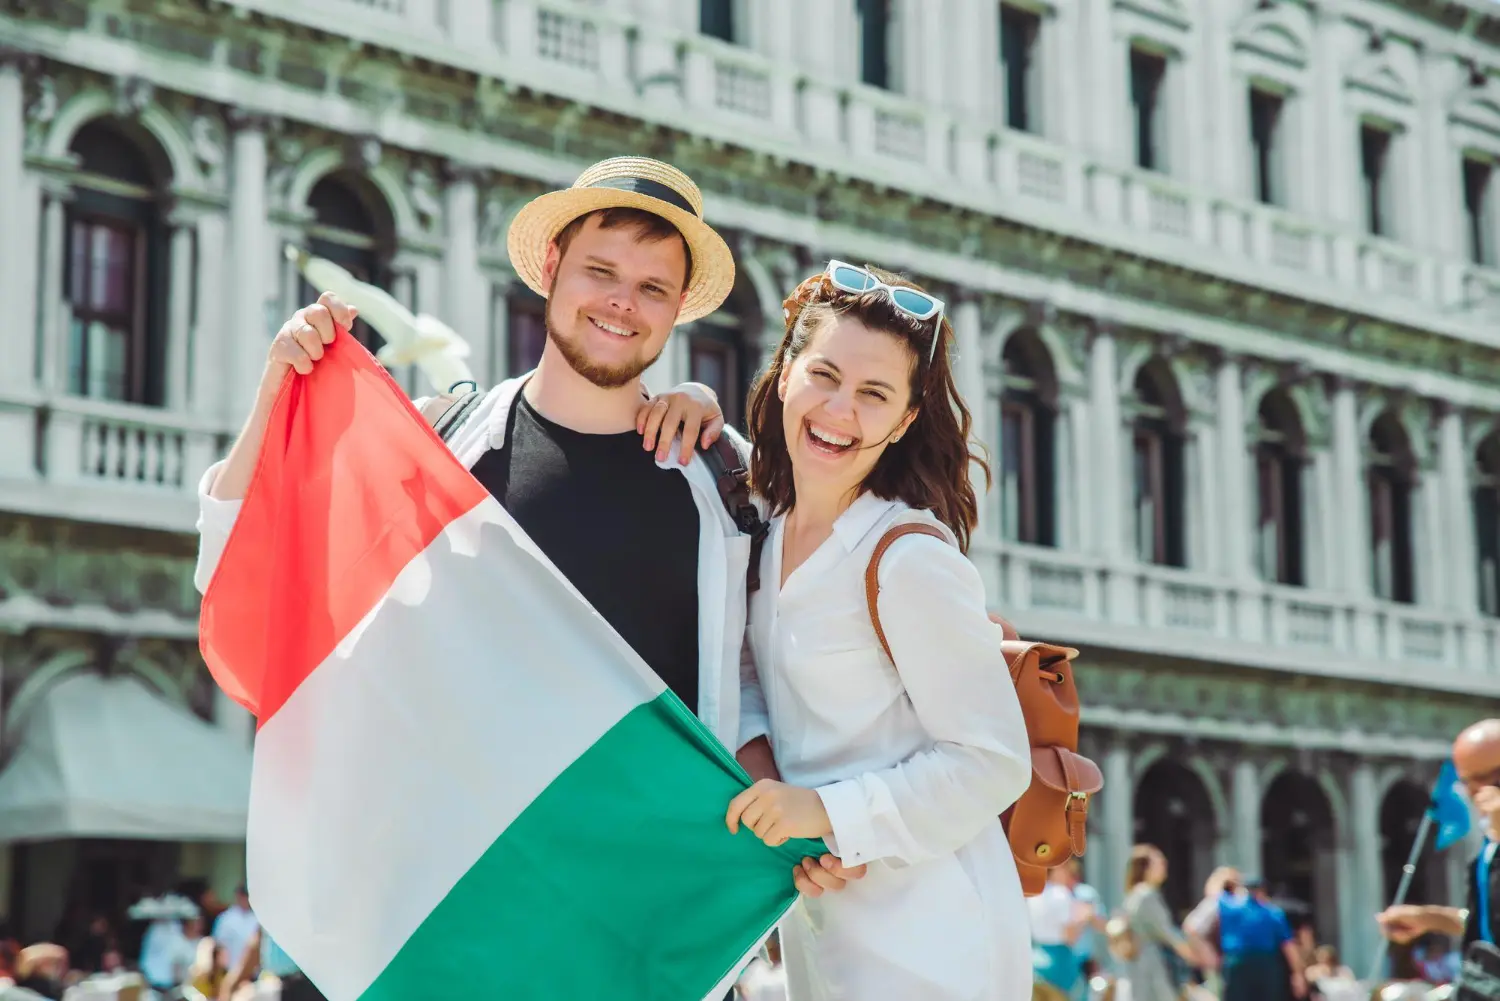 Jovem casal com bandeira italiana, felizes, após descobrirem como morar na Itália.